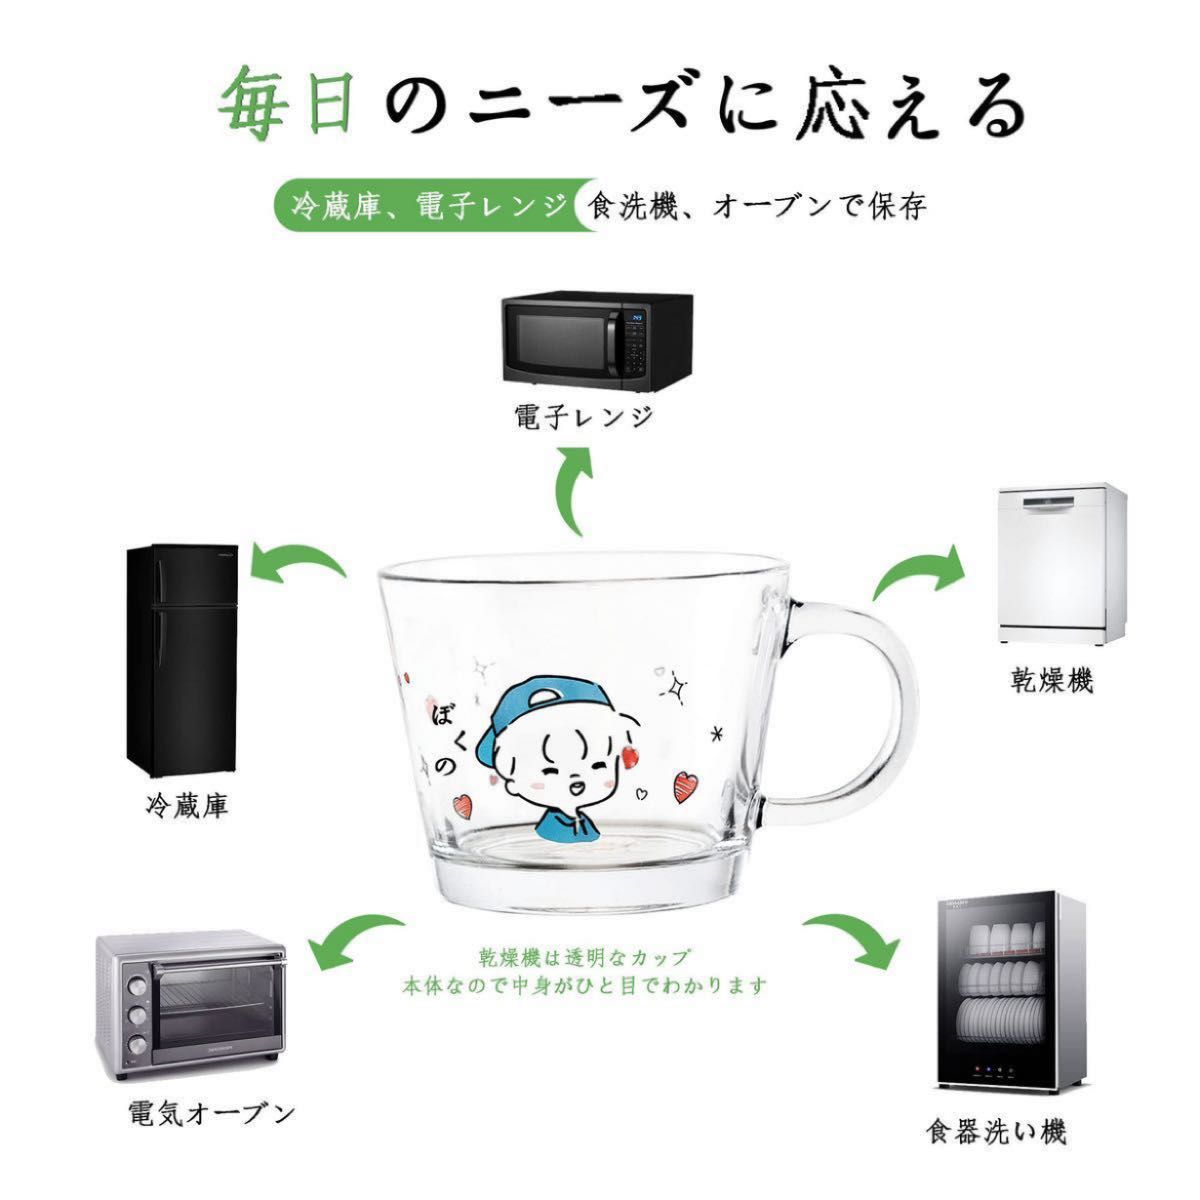 【2個セット】耐熱ガラス コップ スープ 食洗機対応 電子レンジ オーブン 400ml ガラスマグ コーヒーコップ 猫 マグカップ